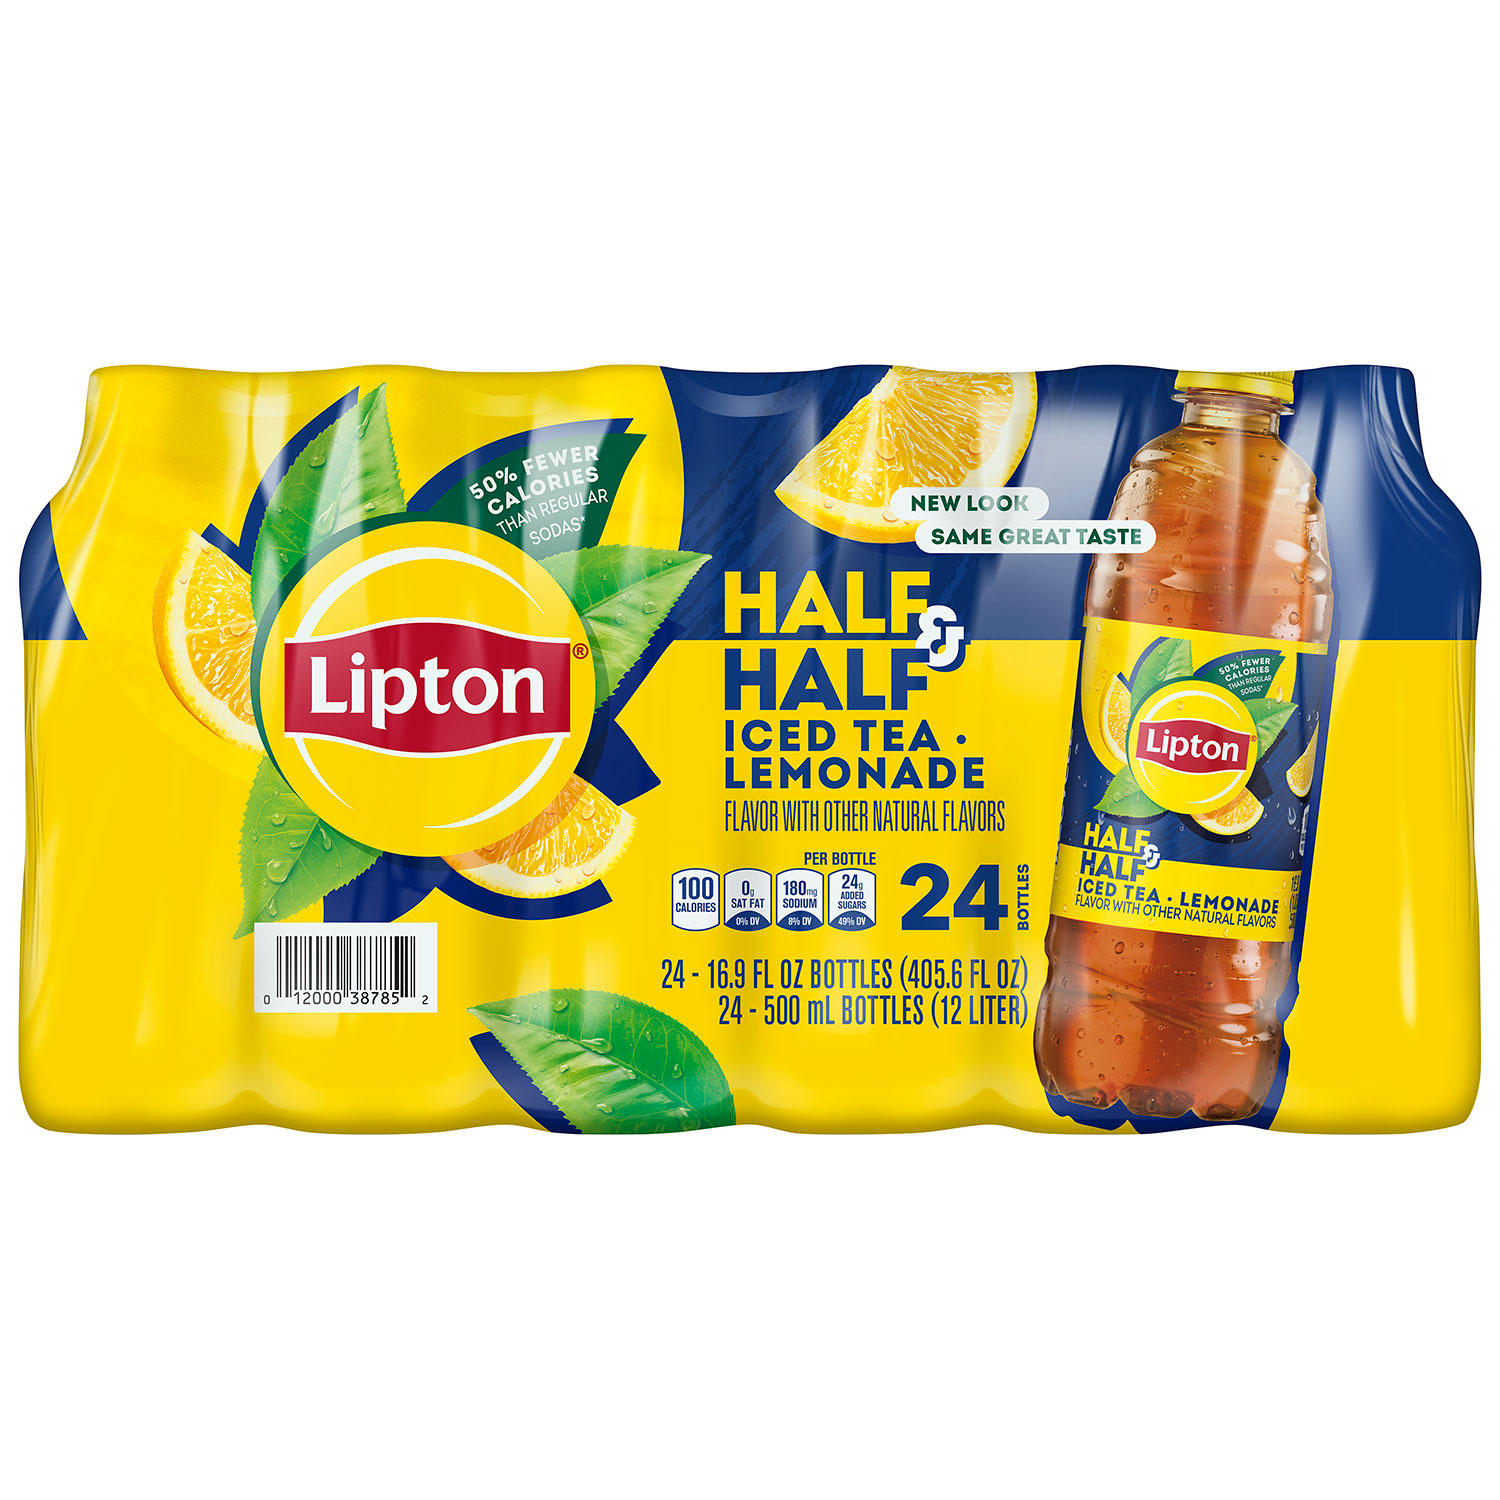 Lipton Half and Half Iced Tea and Lemonade (16.9 oz, 24 pk.)